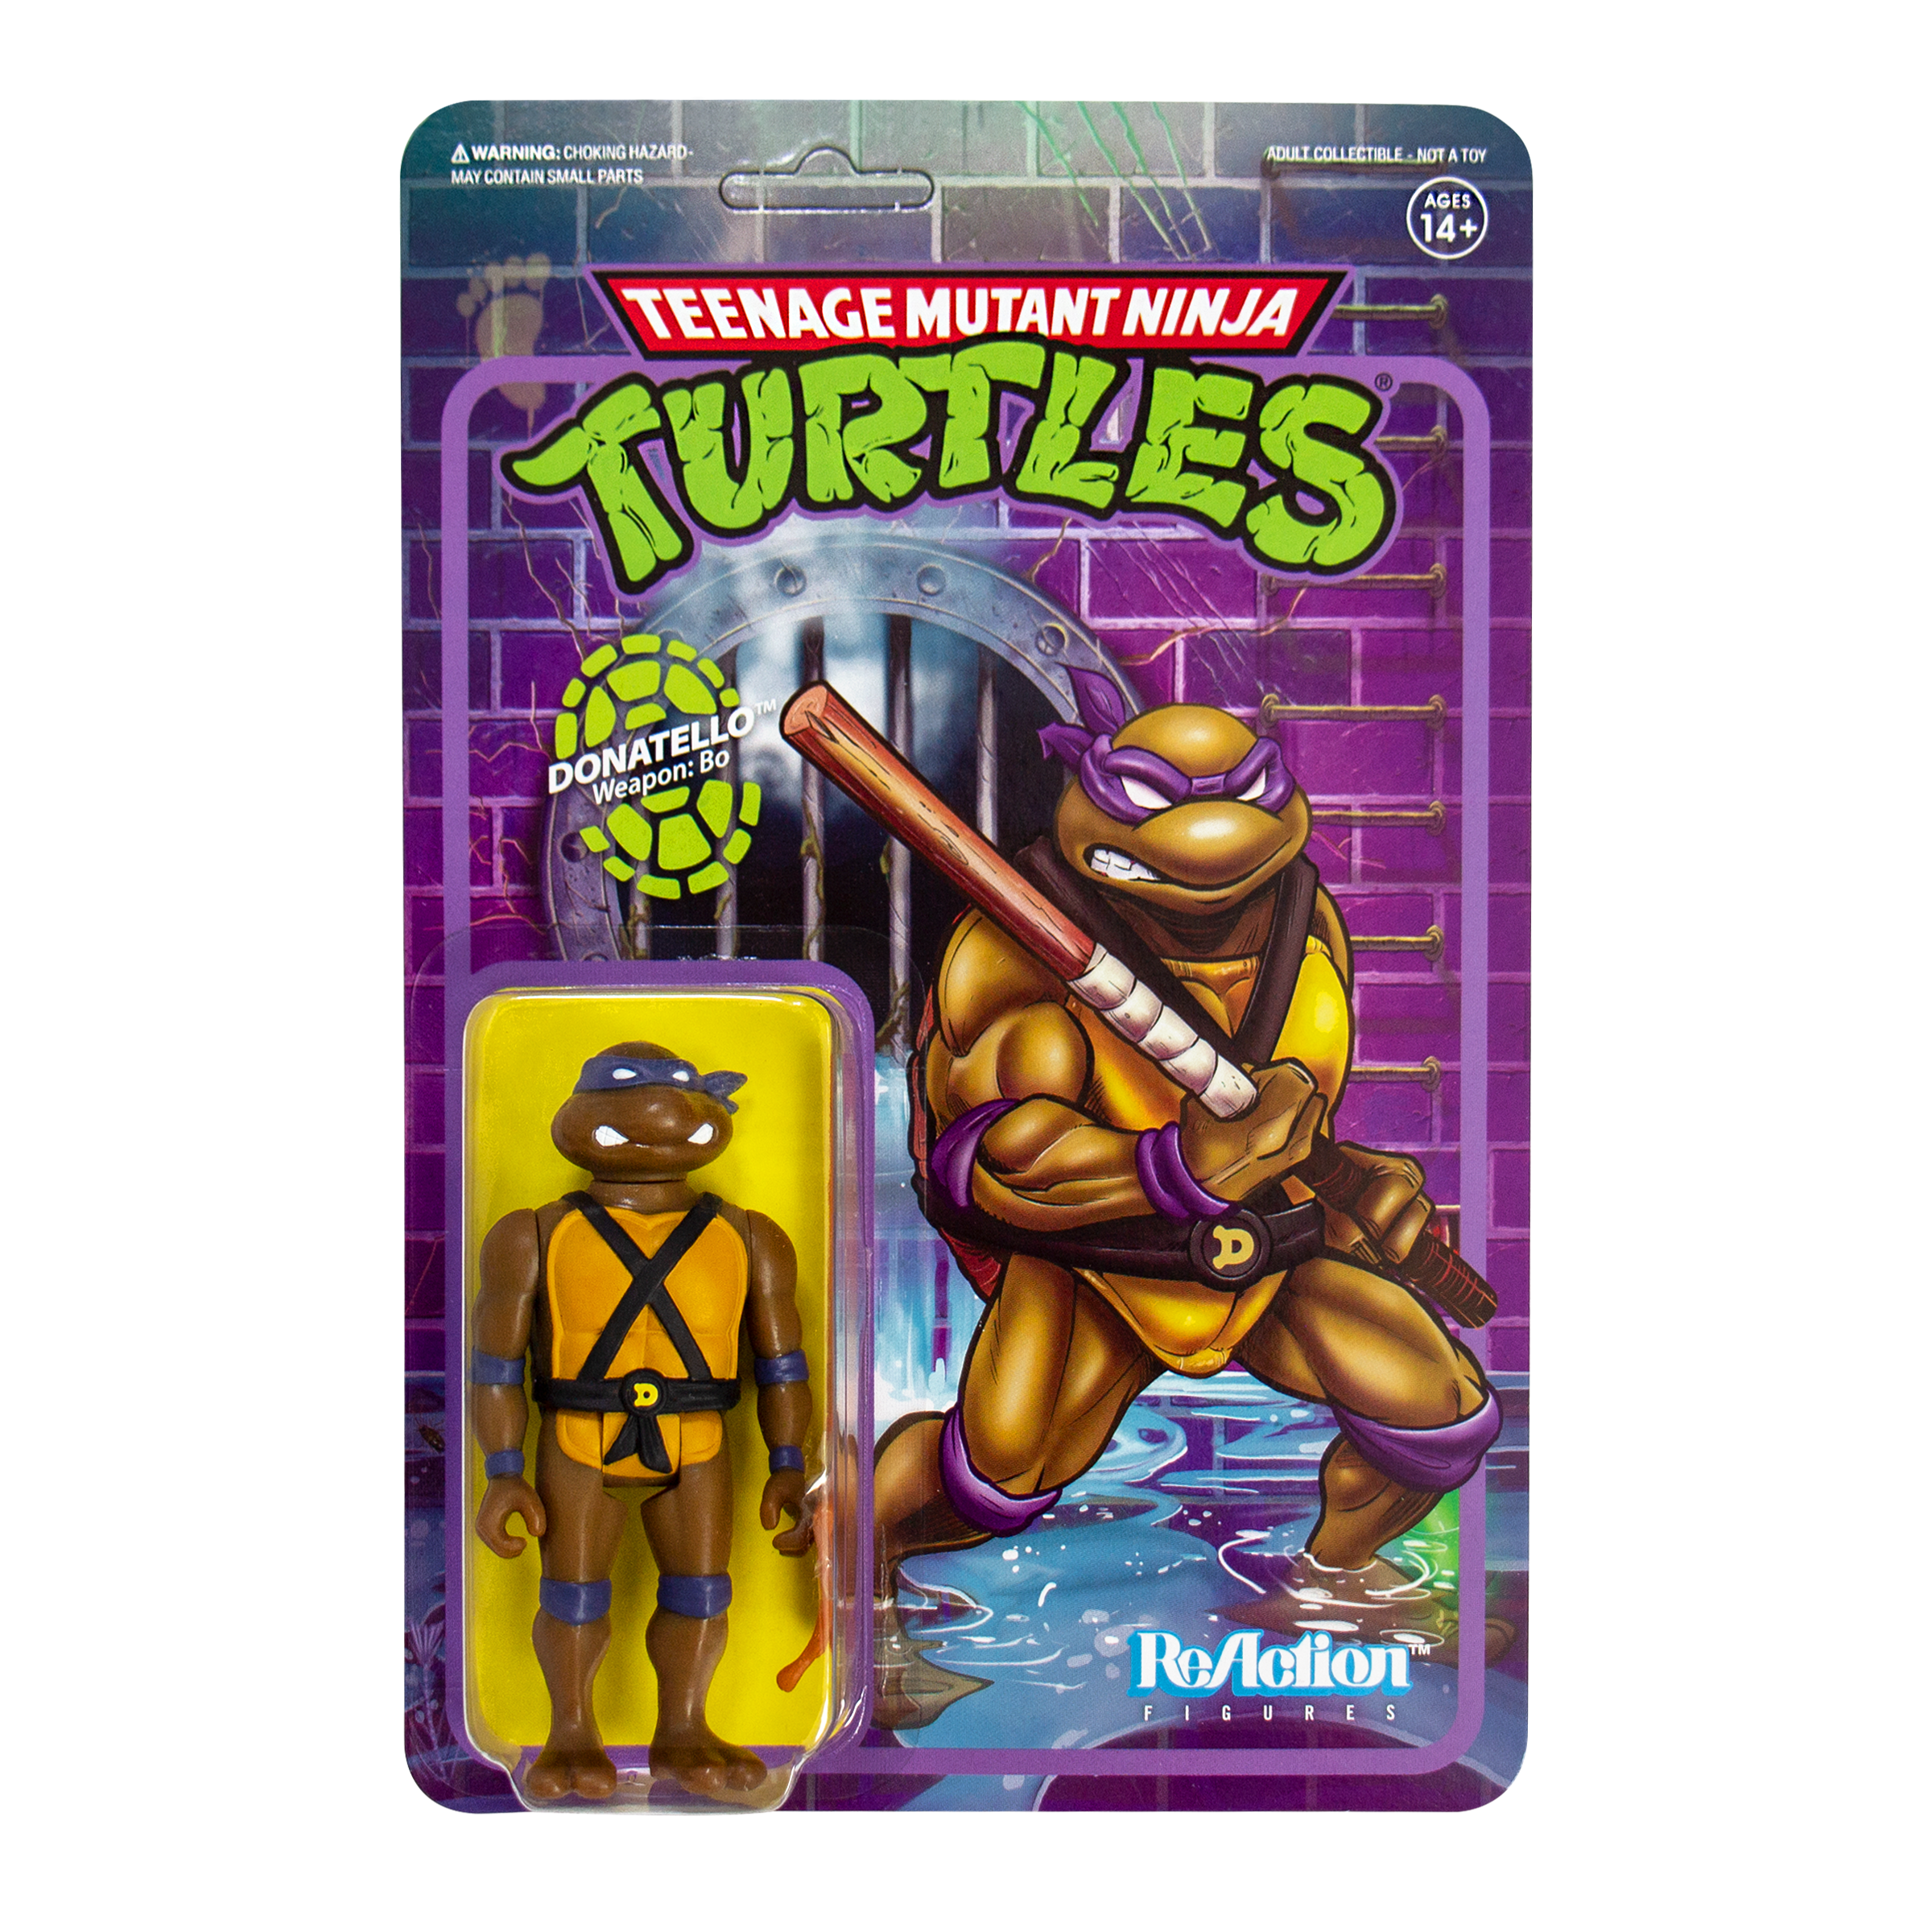 Teenage Mutant Ninja Turtles ReAction Figure - Donatello